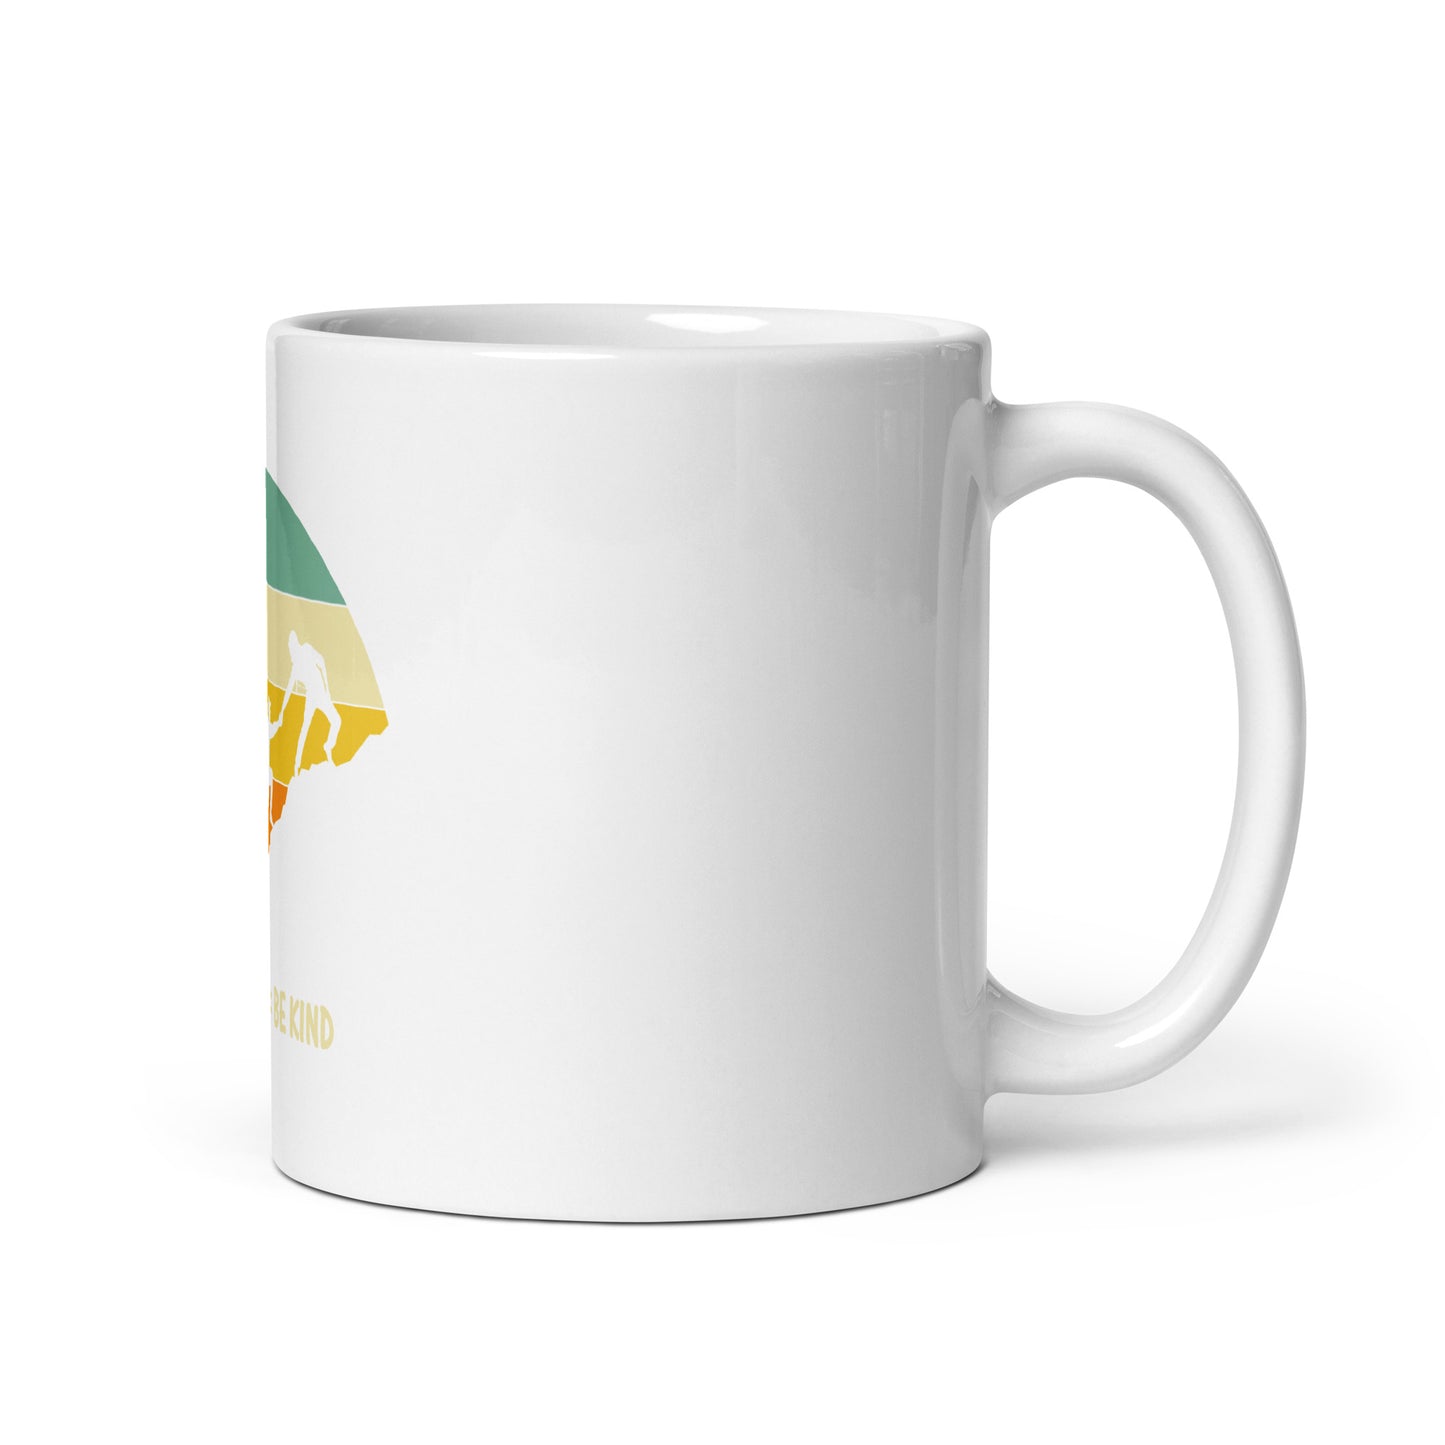 Be Kind White glossy mug